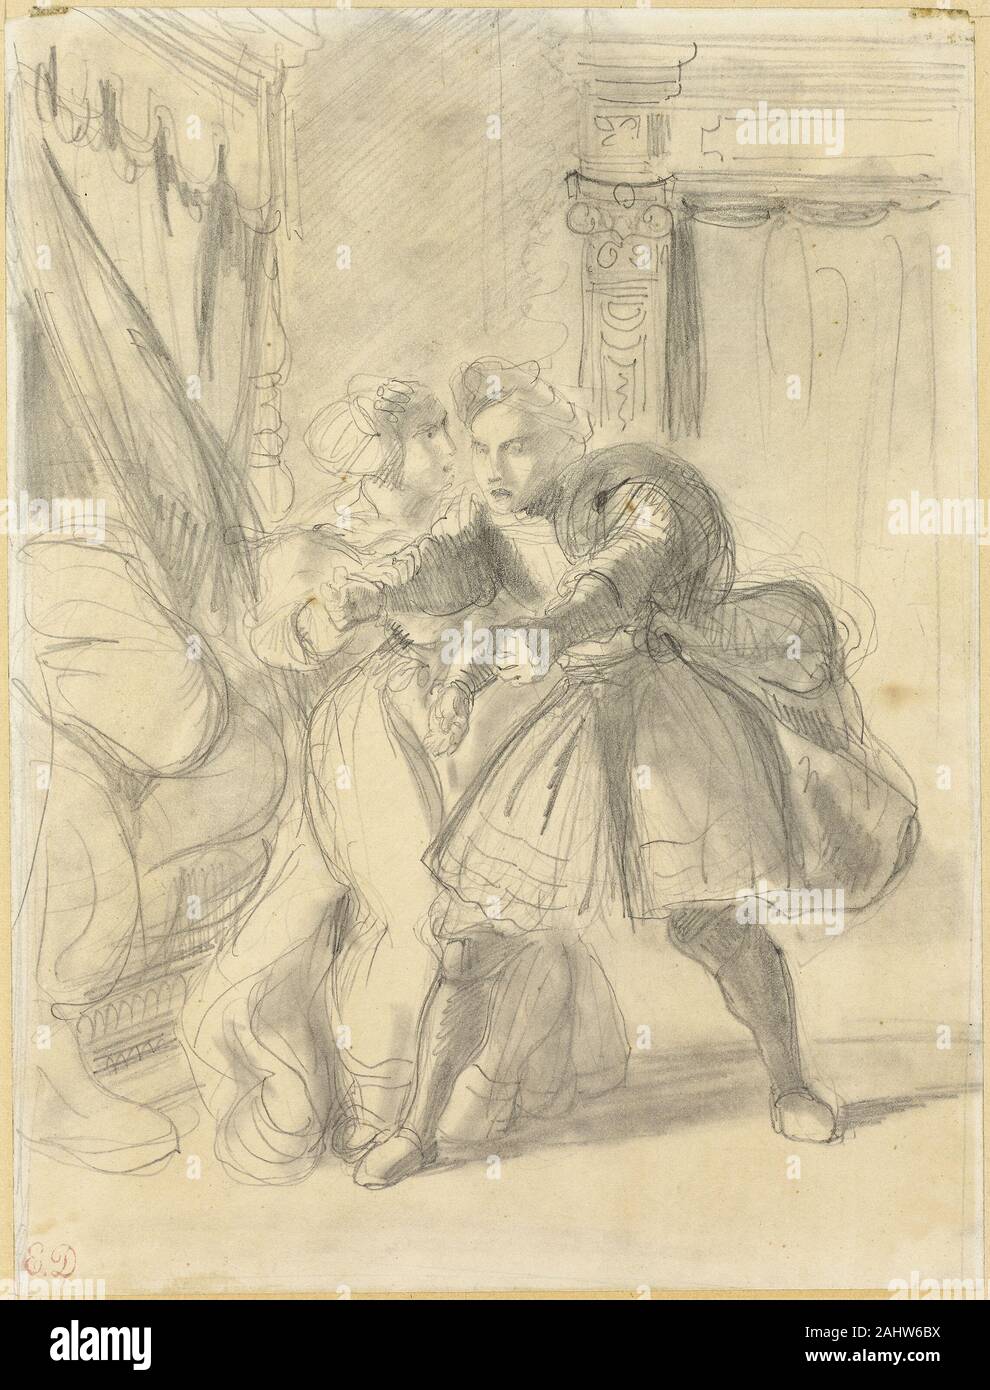 Eugène Delacroix. Studie. 1836 - 1843. Frankreich. Graphit und stumping auf Creme webte Papier Stockfoto